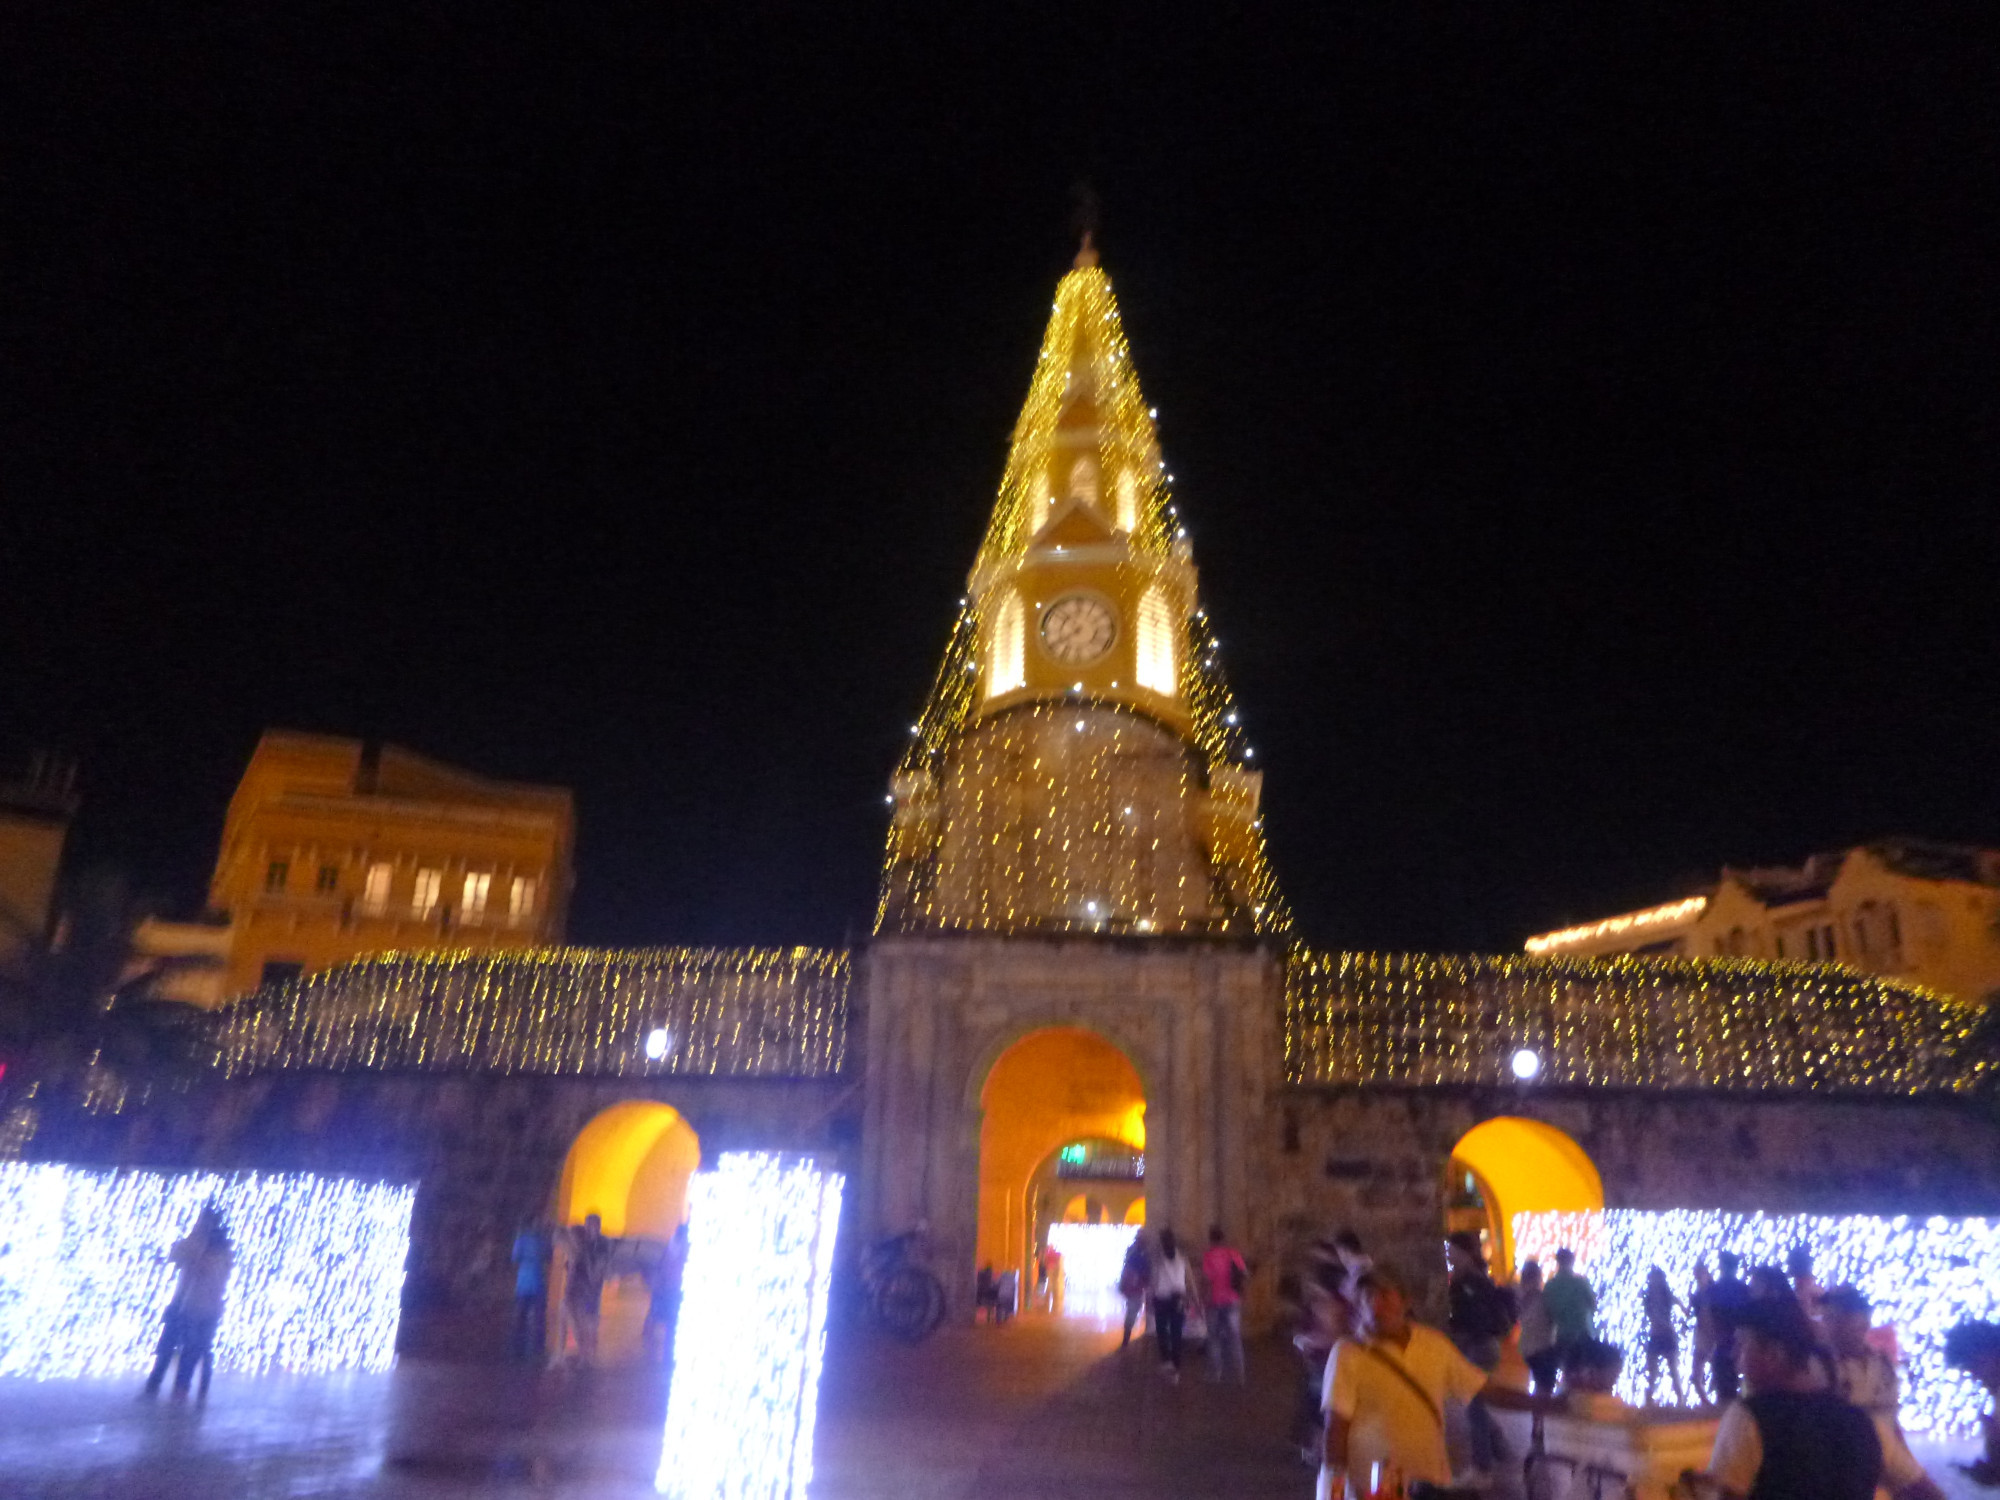 Monumento Torre del Reloj by night